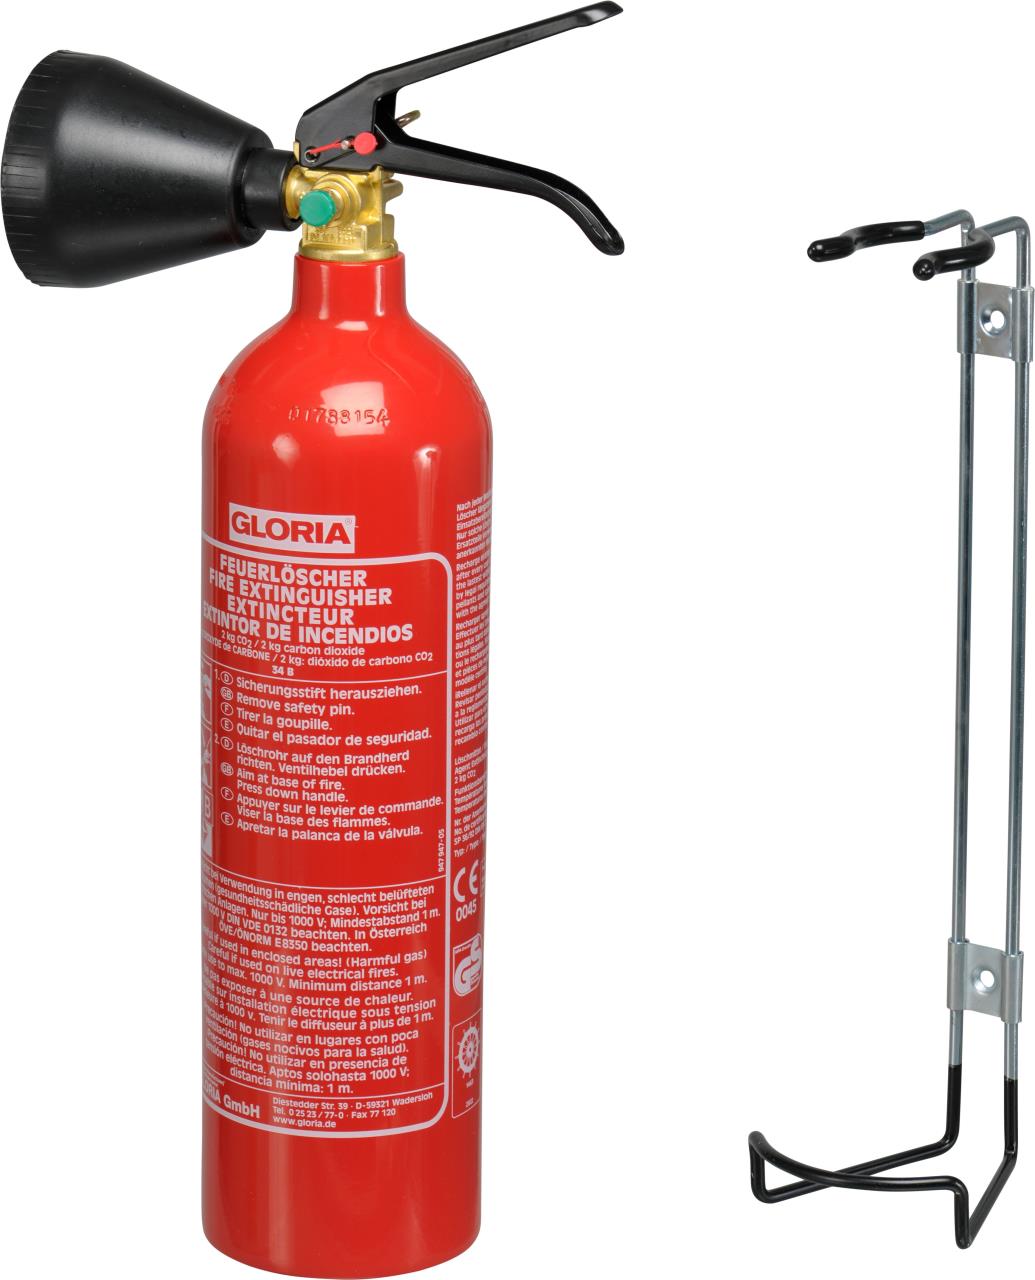 GLORIA carbonic acid fire extinguisher